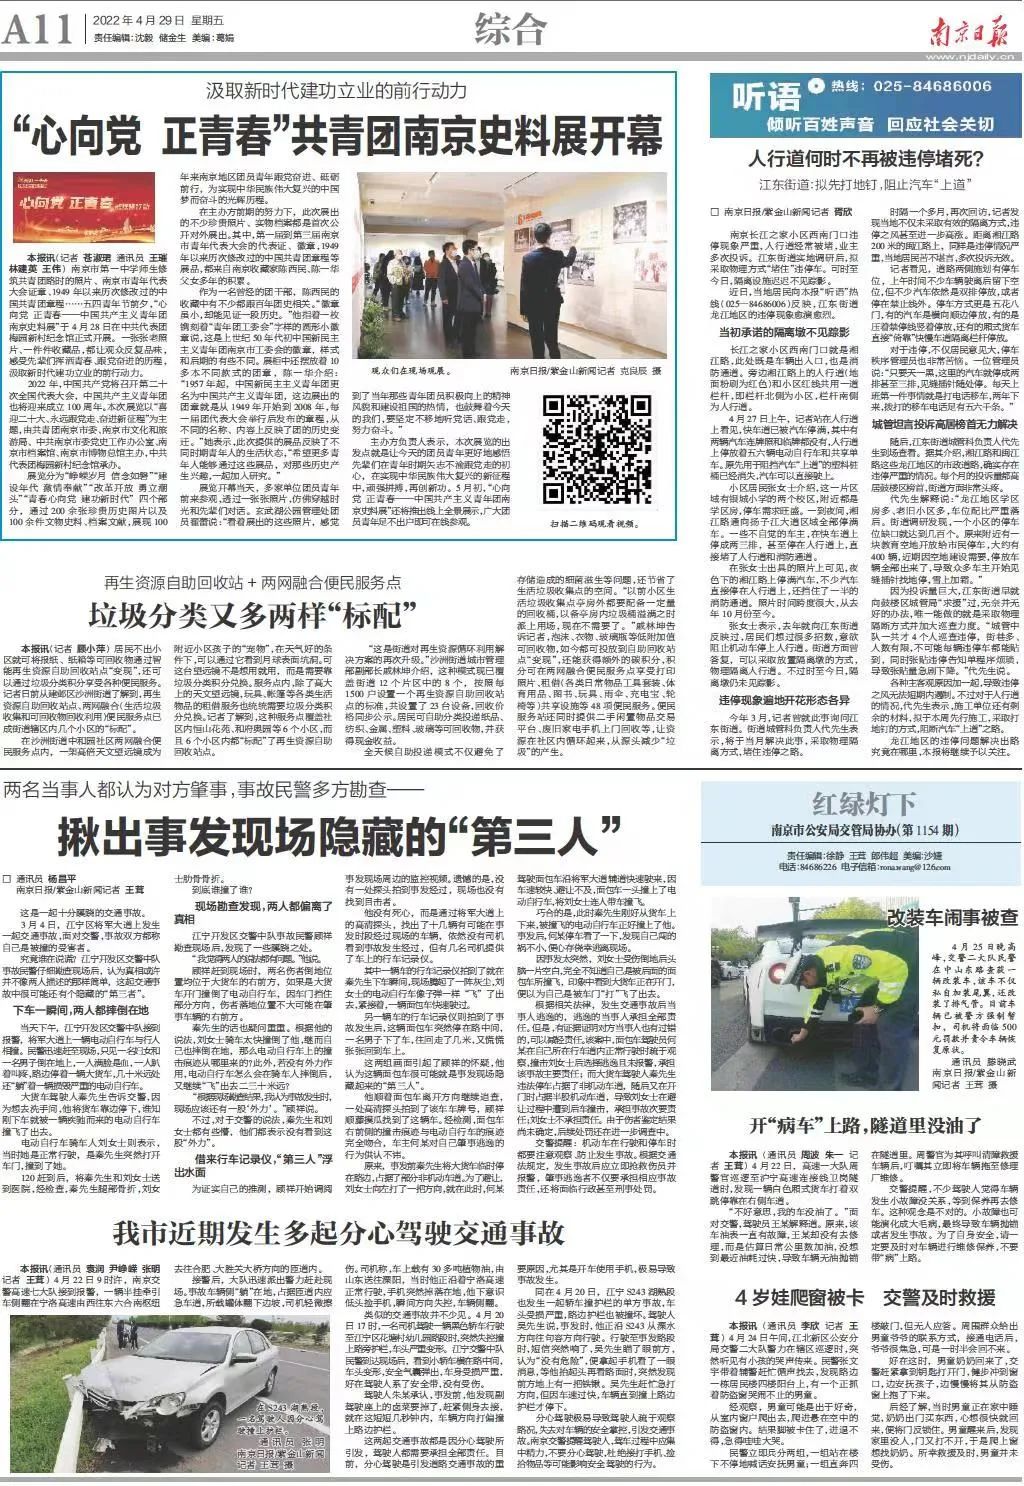 2022年4月29日《南京日报》A11版